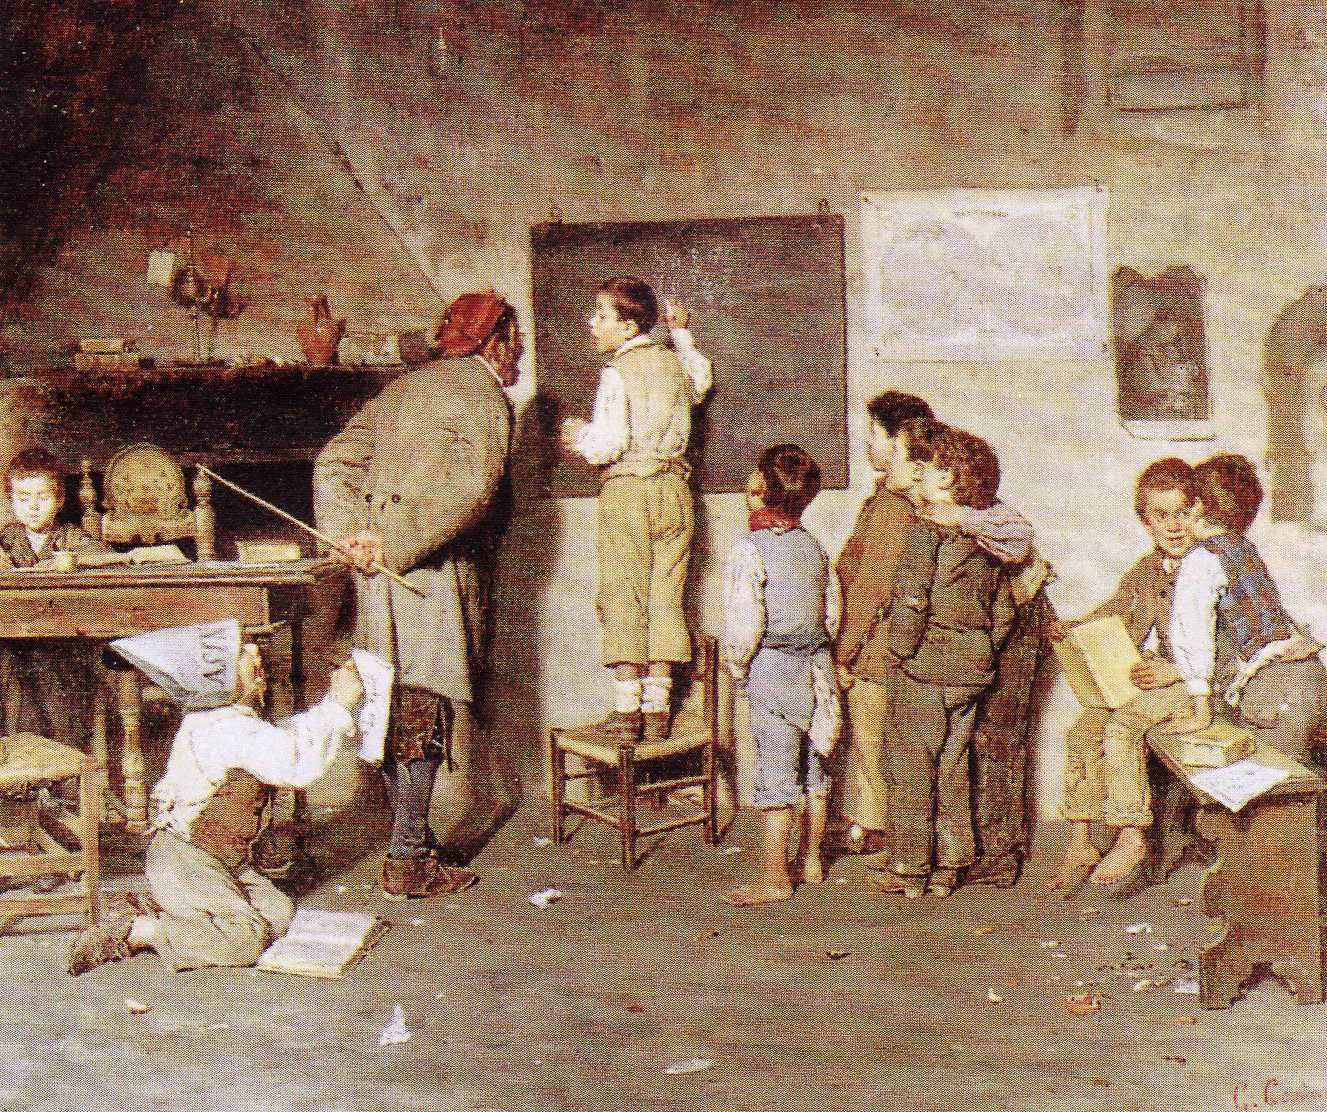 La scuola del villaggio  L'educazione dei bambini poveri era sostenuta dai liberali e da preti come Ferrante Aporti  - 1890